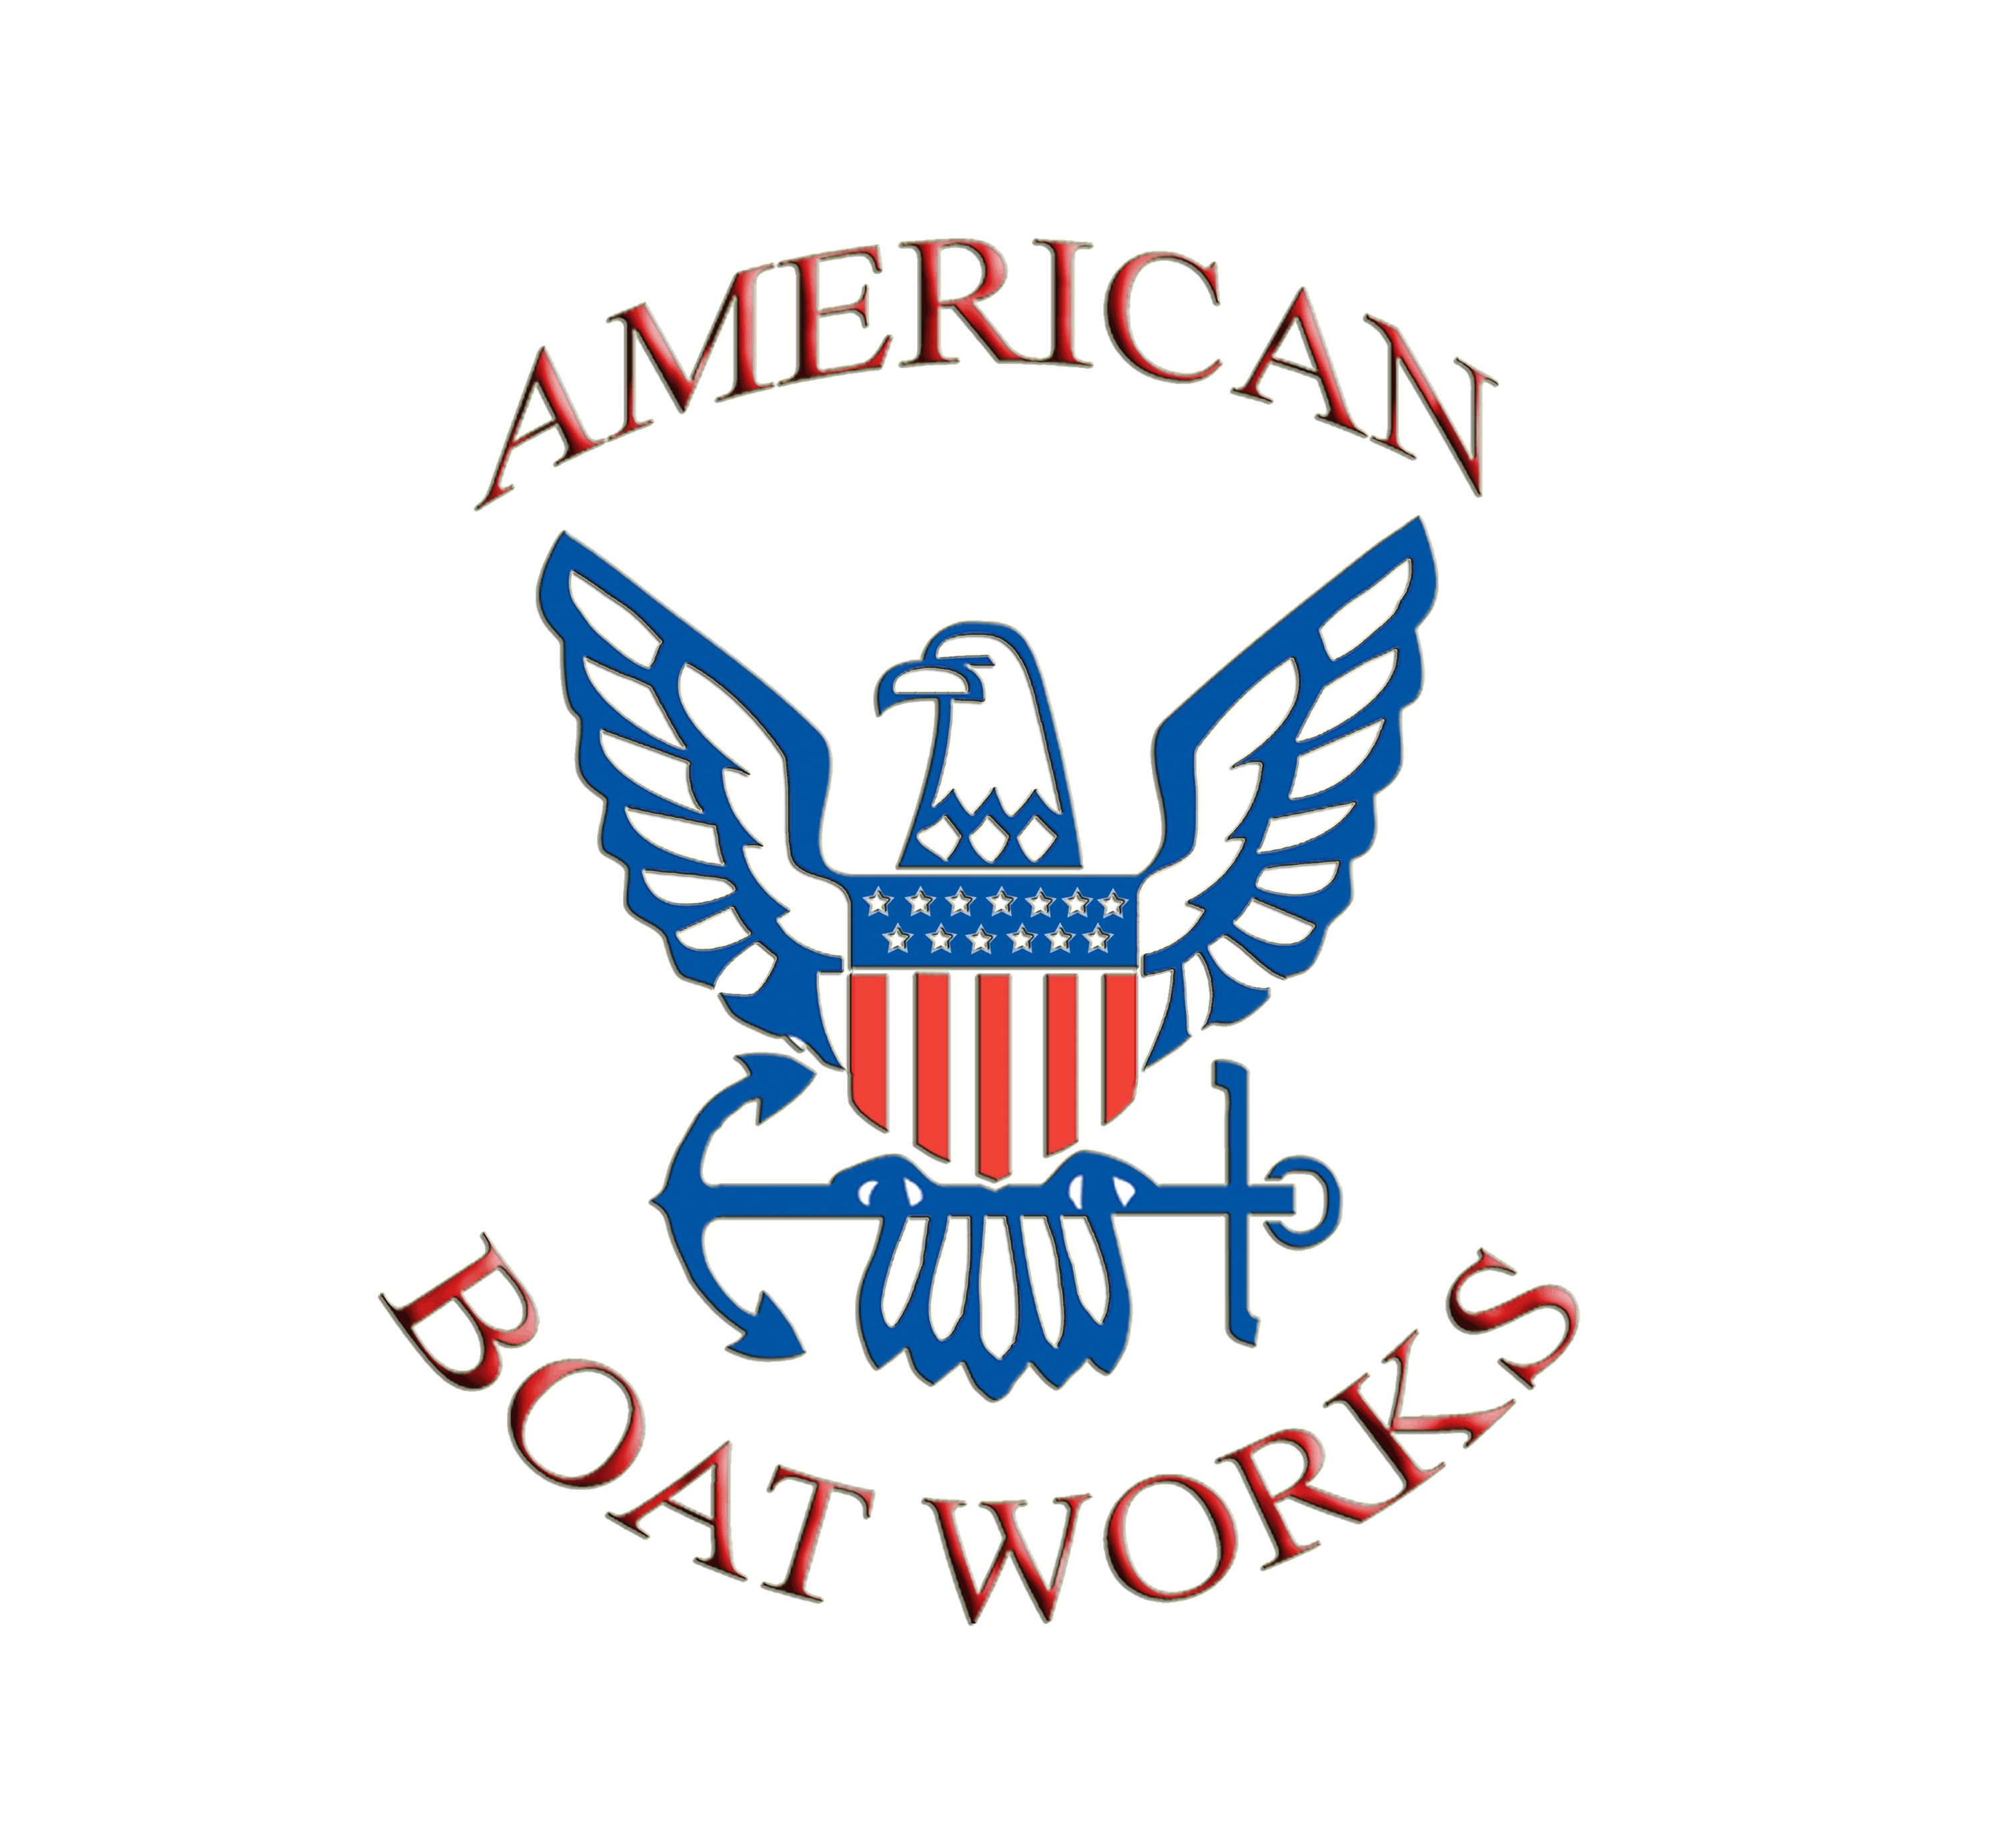 Boat Gel Coat Repair